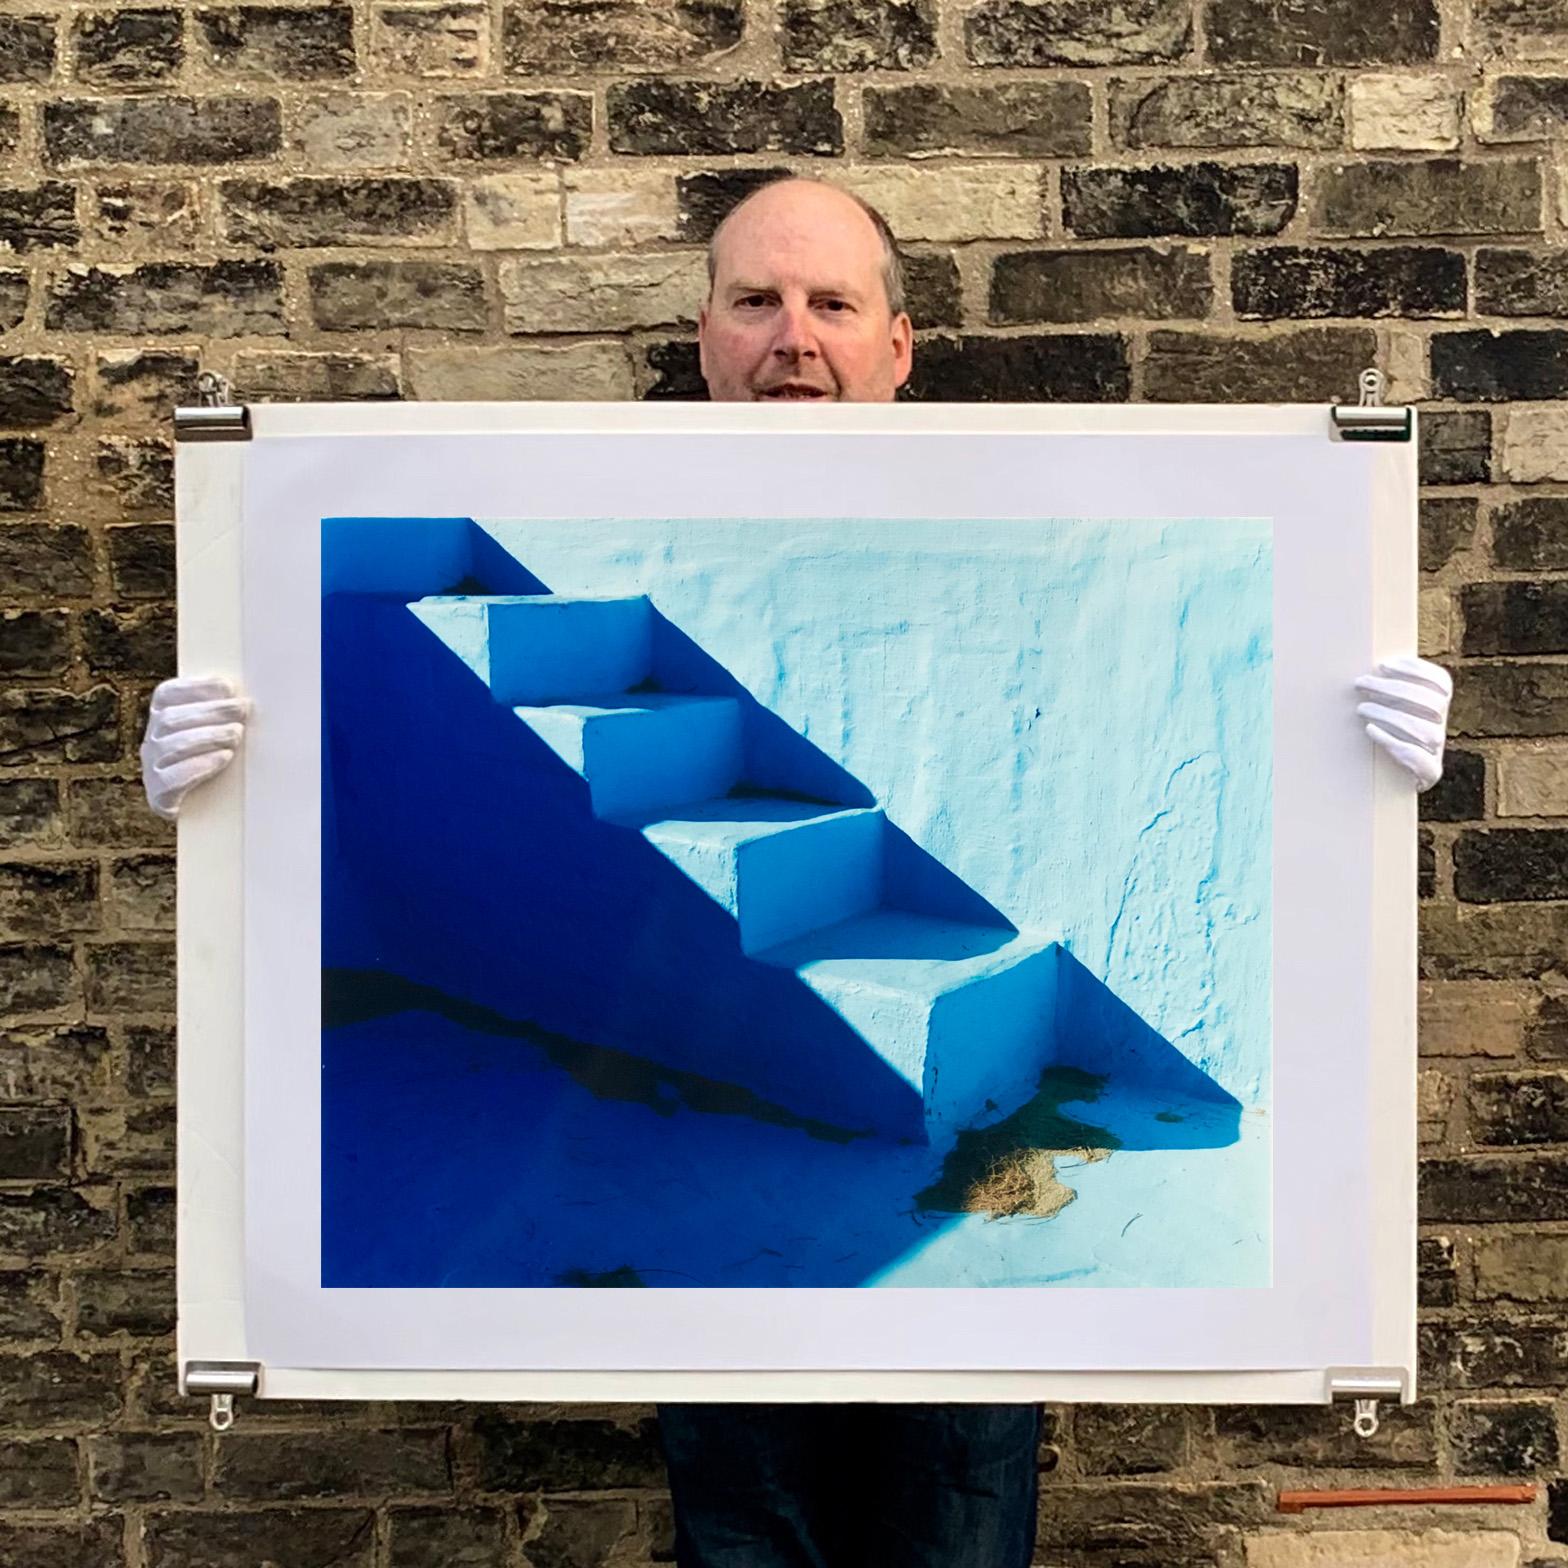 Steps, Zzyzx Resort Pool, Soda Dry Lake, Kalifornien – minimalistische blaue Fotografie (Blau), Color Photograph, von Richard Heeps